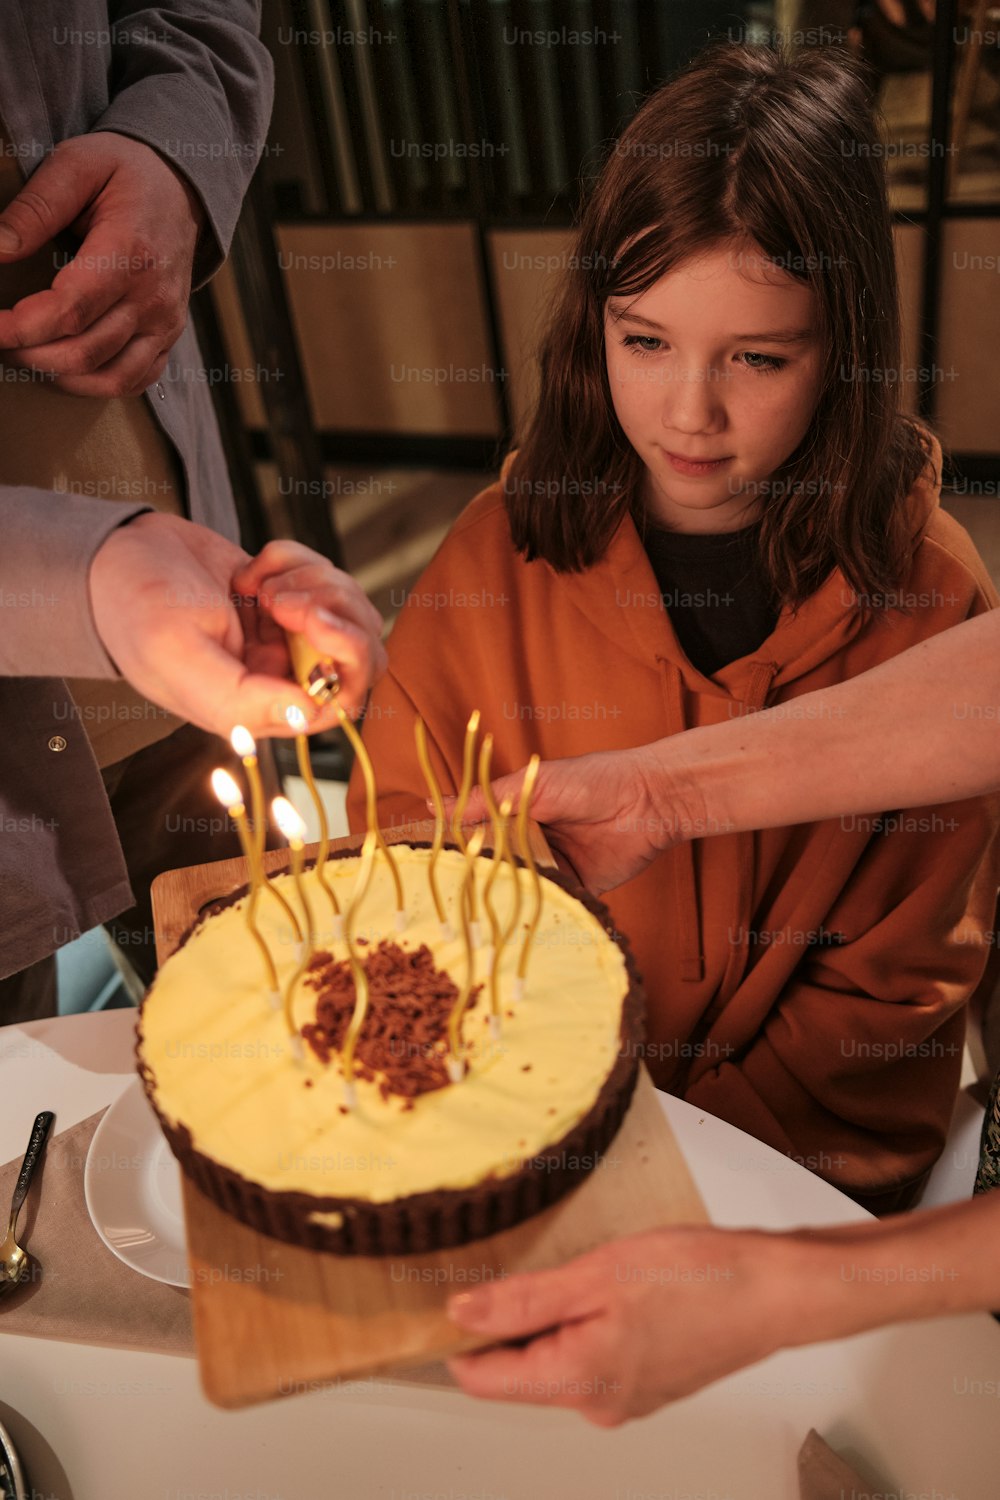 Une petite fille s’apprête à souffler des bougies sur son gâteau d’anniversaire